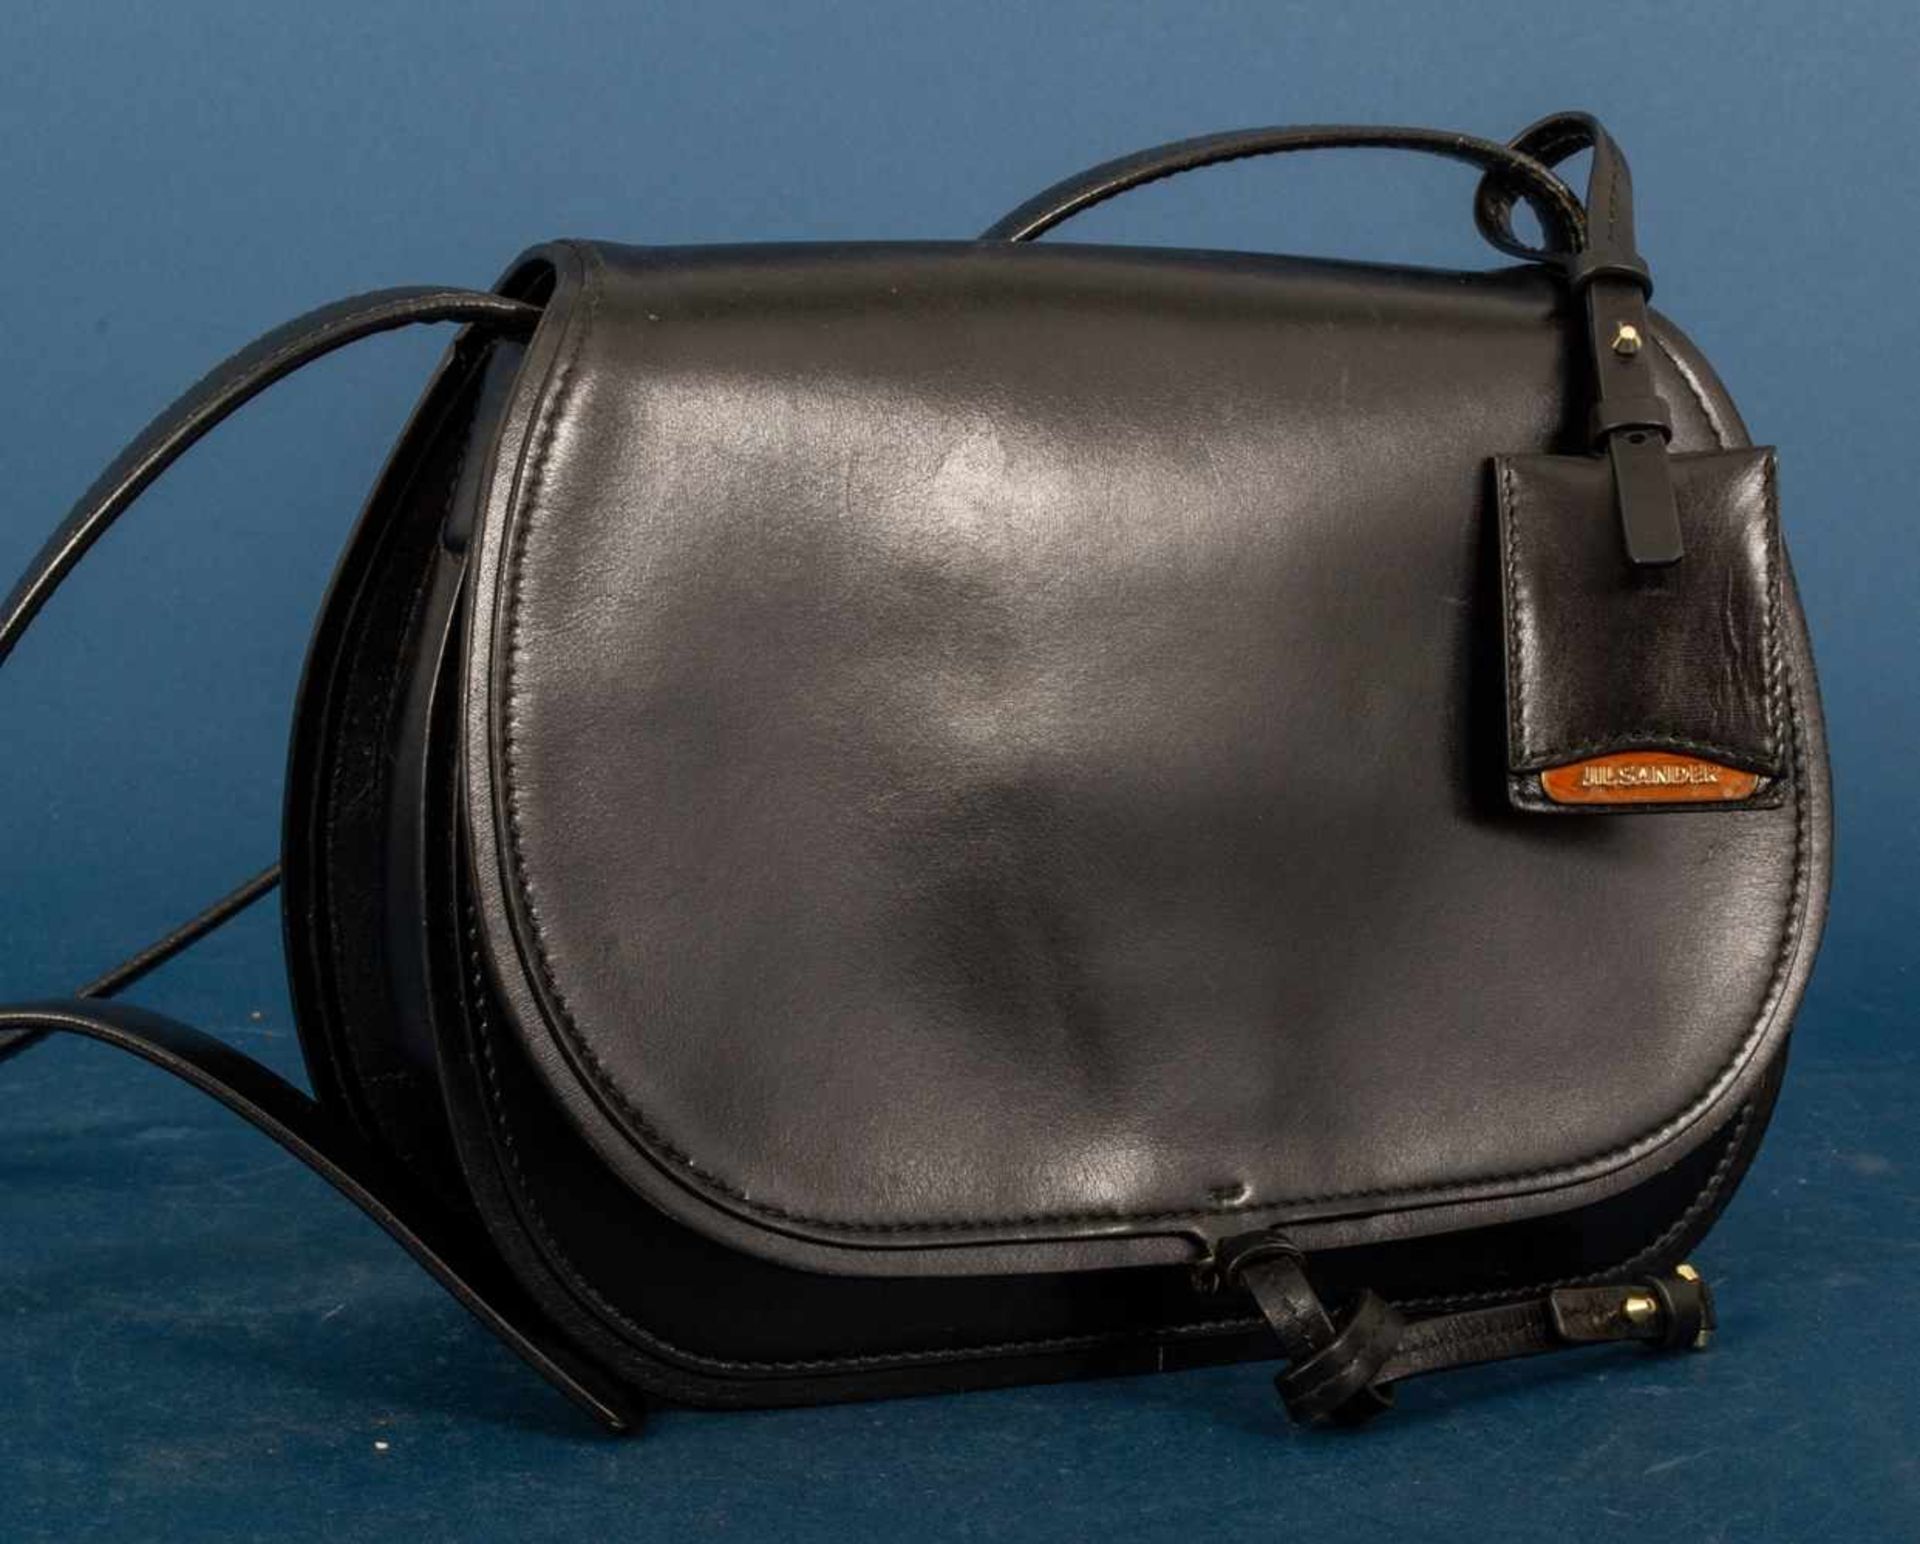 JIL SANDER - Damenhandtasche/Umhängetasche, schwarzes Leder mit polierten Messing-Beschlägen/ - Image 3 of 9